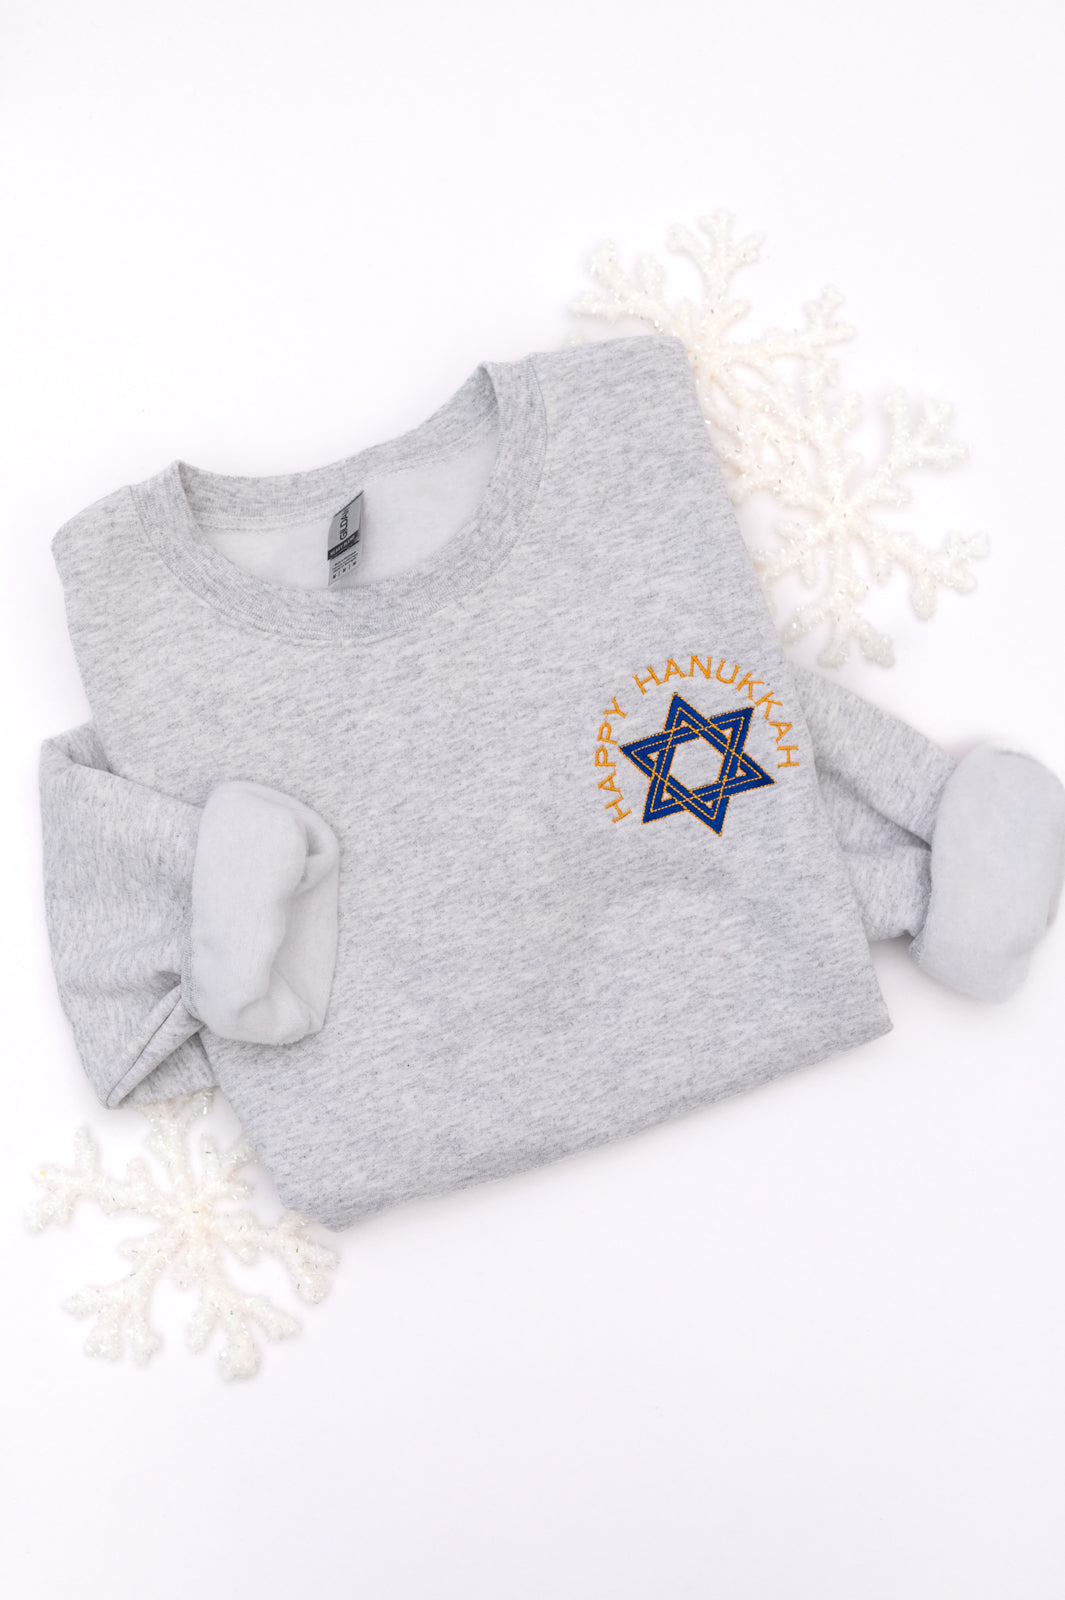 PREORDER: Happy Hanukkah Embroidered Sweatshirt